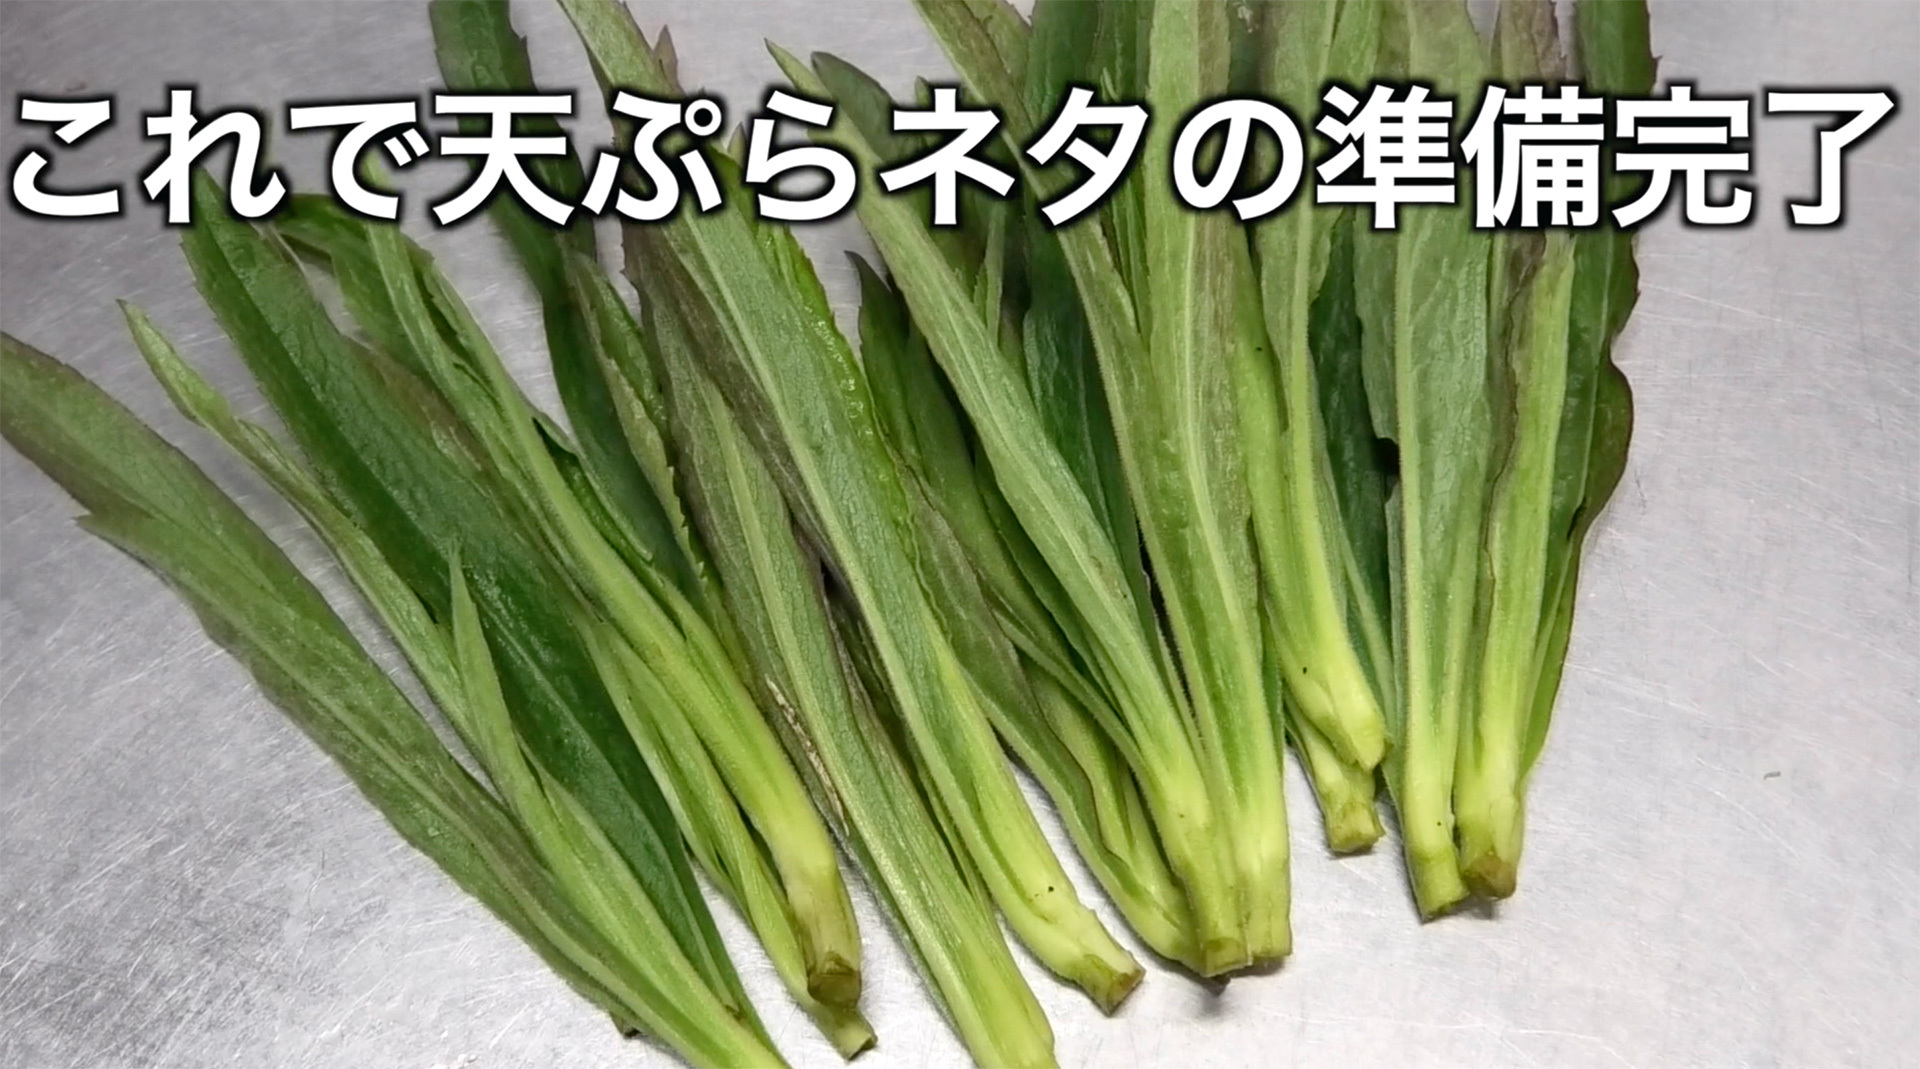 天ぷらネタとして下処理が完了したセイタカアワダチソウの新芽